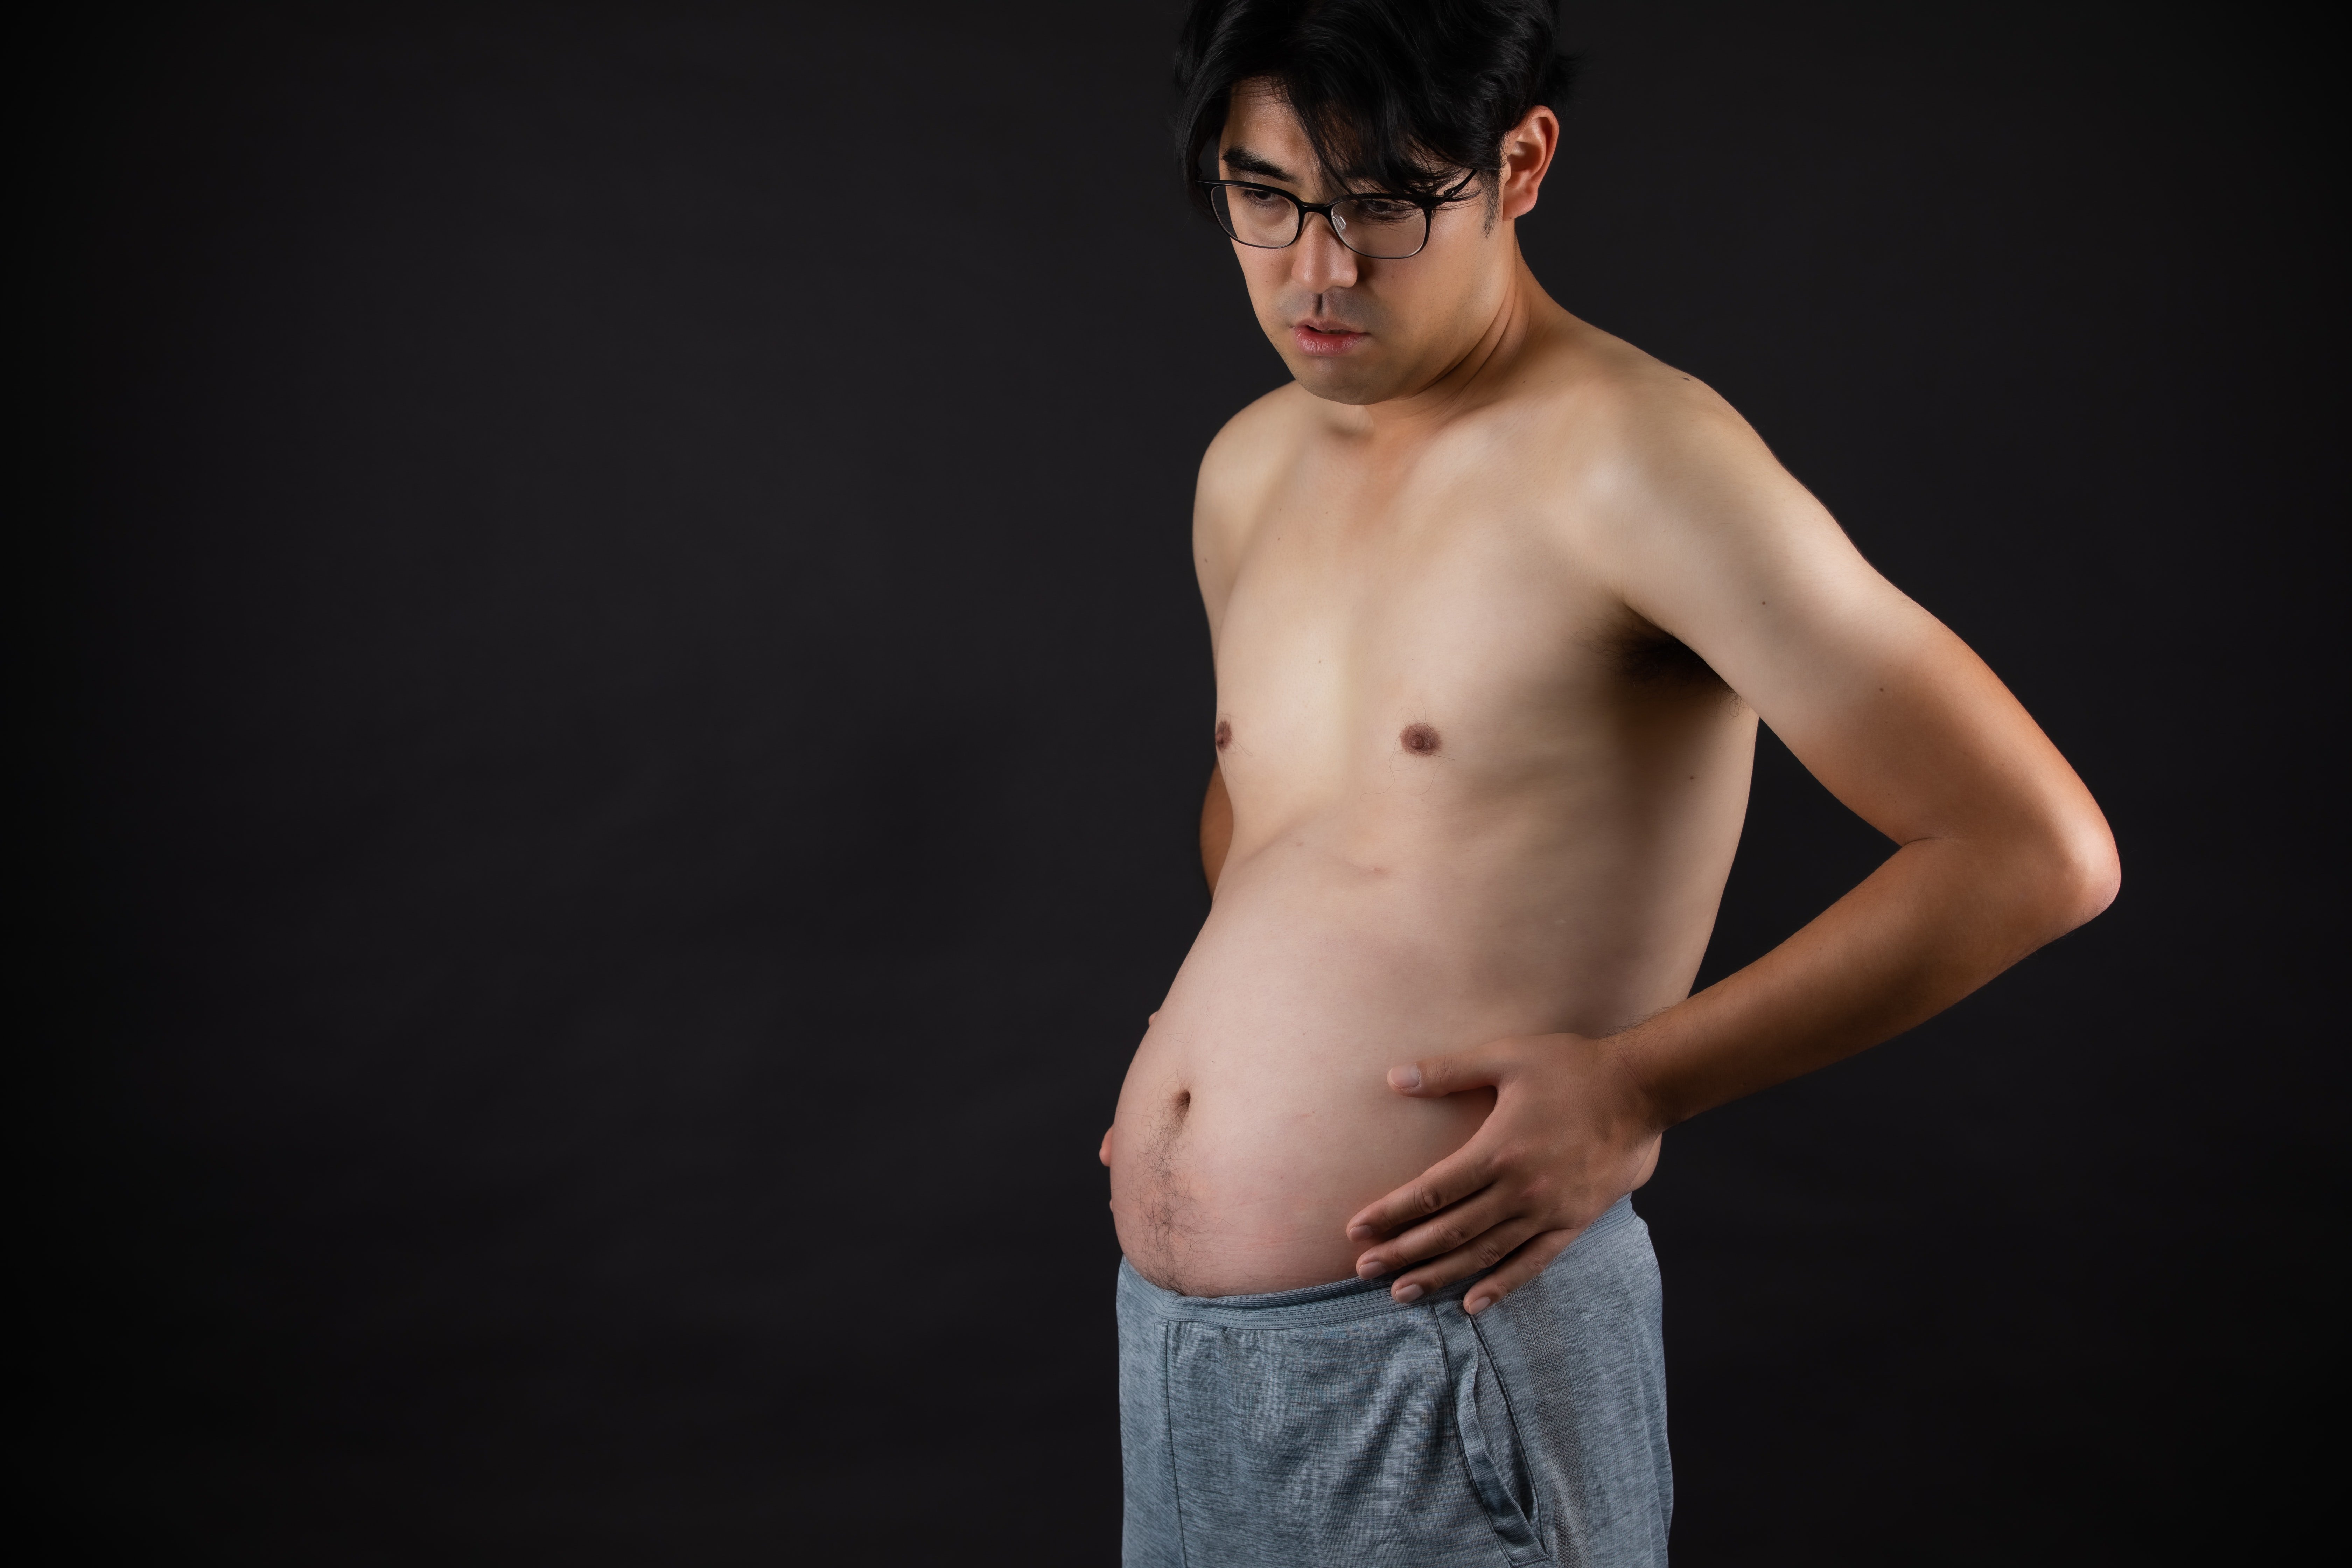 Home amb el ventre inflat : Unsplash